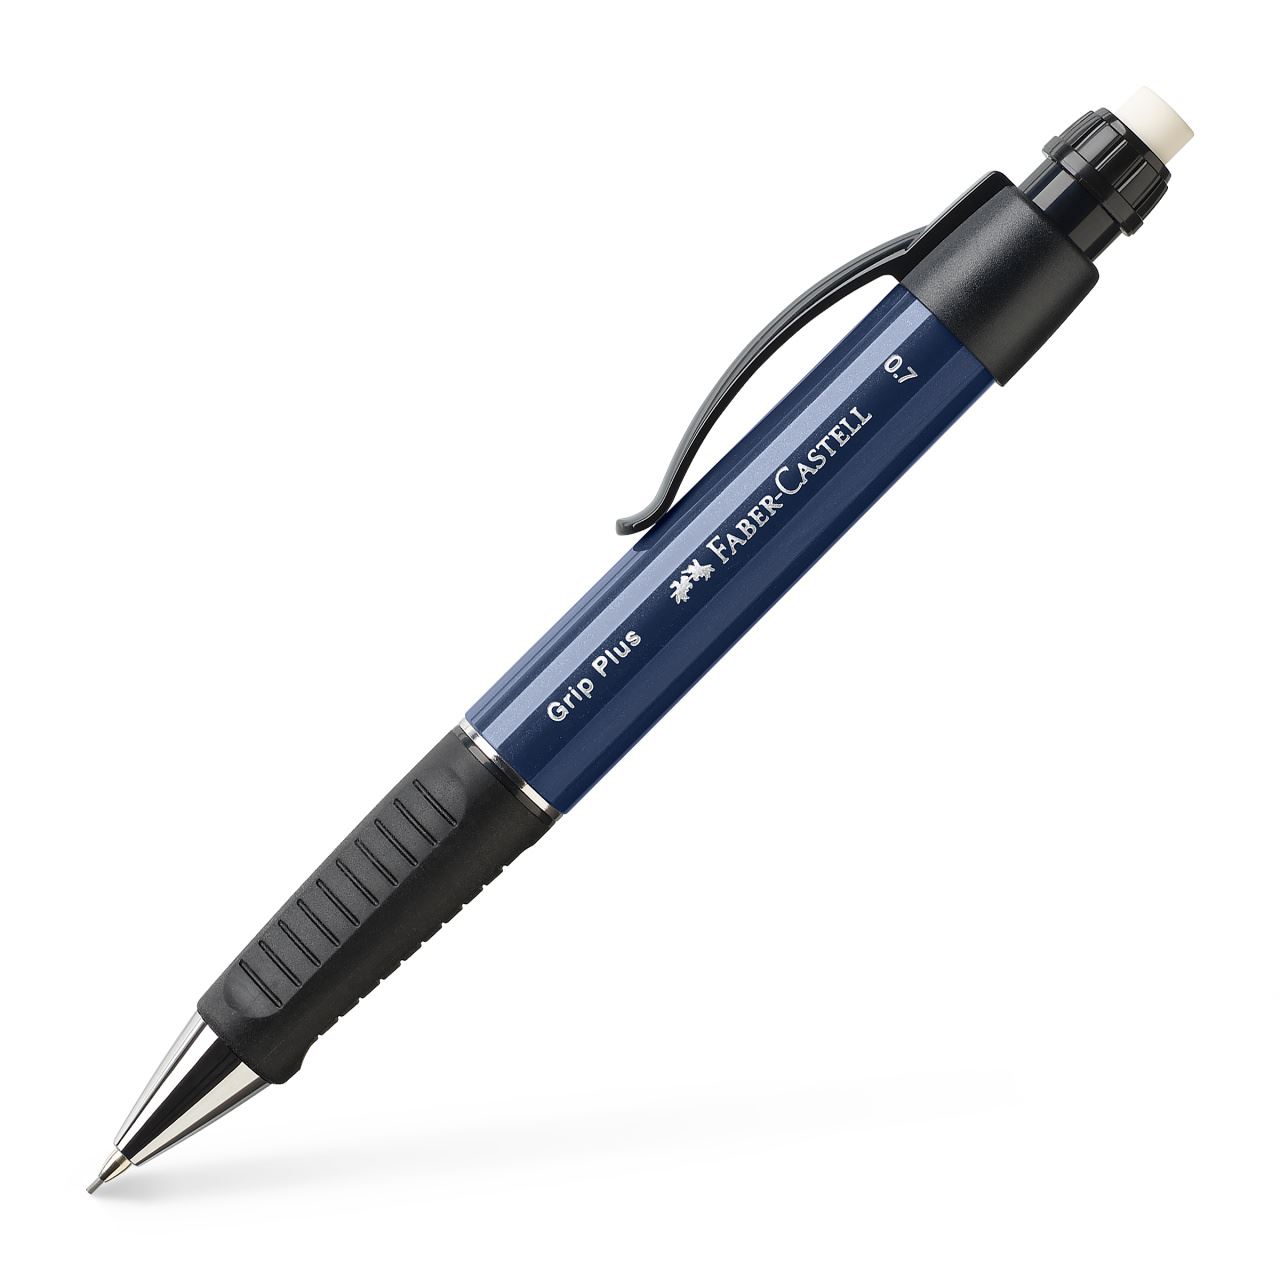 Faber-Castell - Grip Plus Druckbleistift, 0.7 mm, navy blue